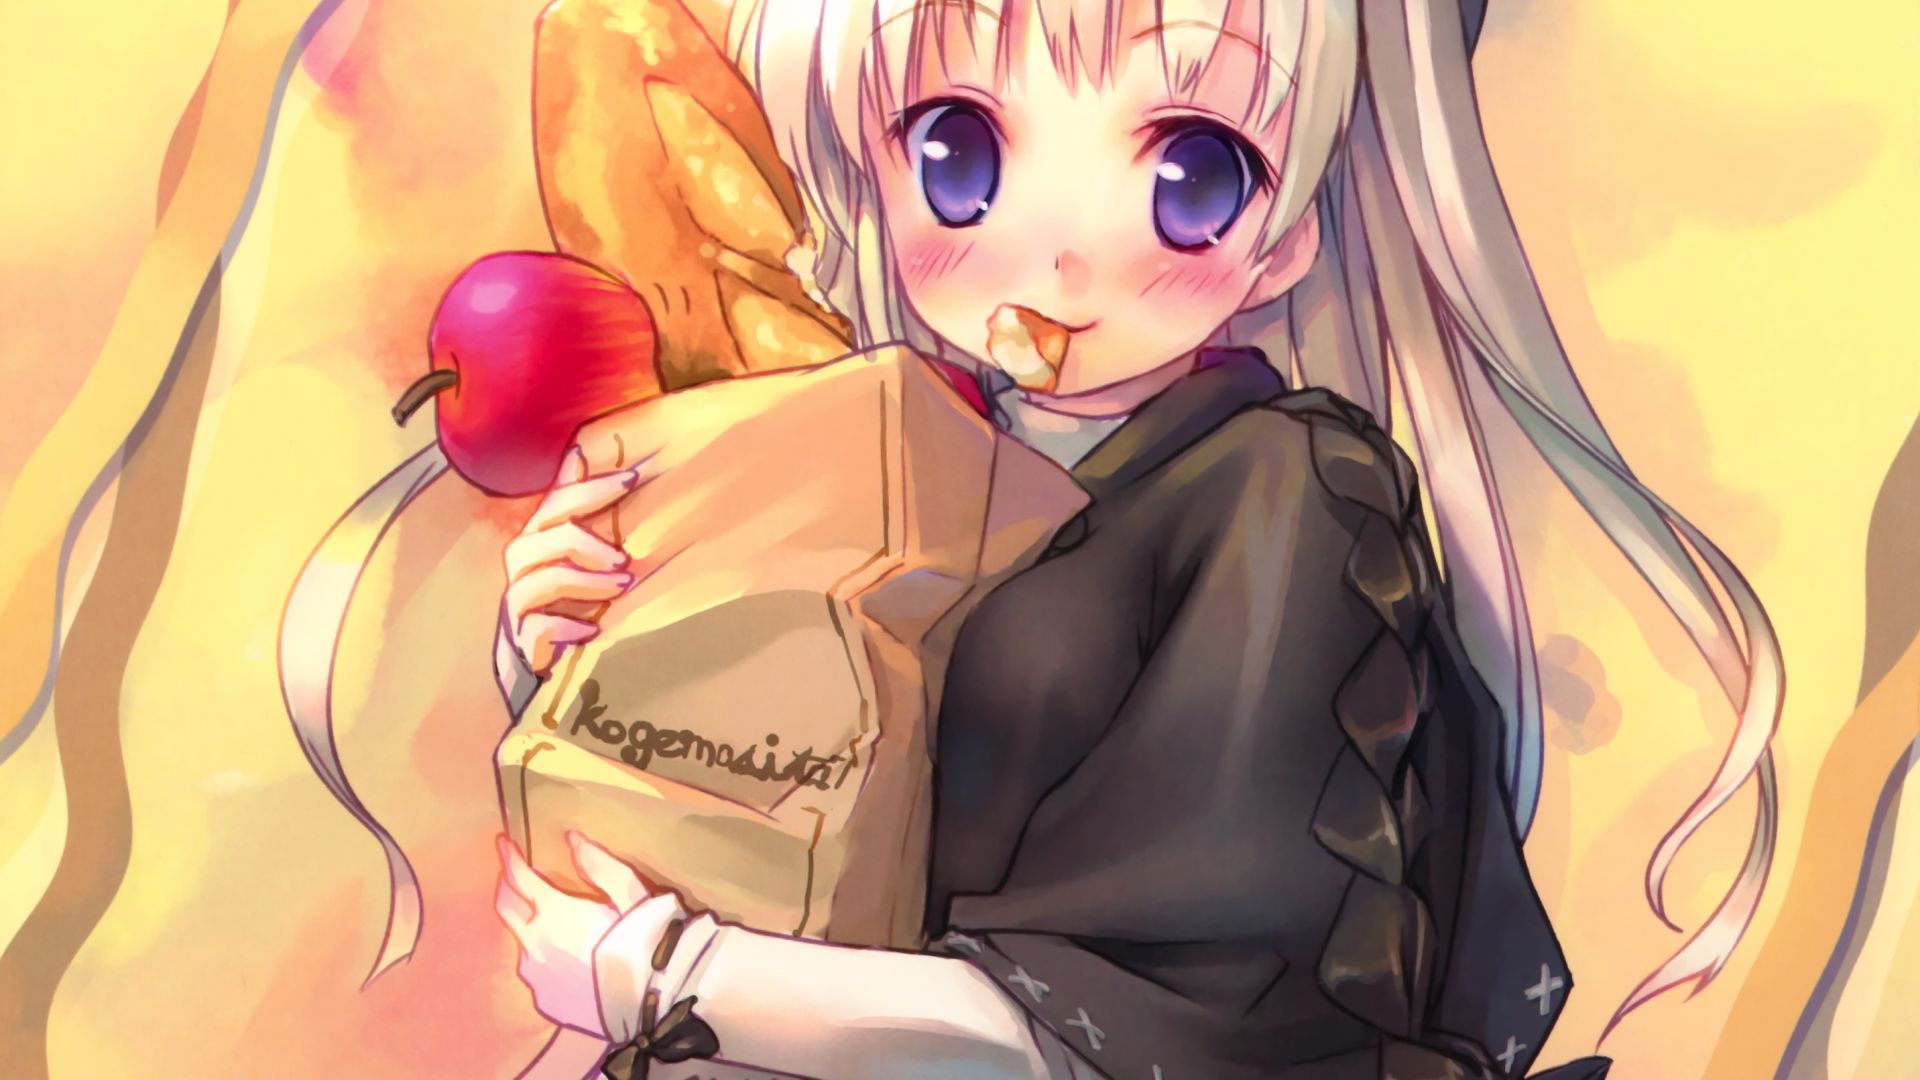 Wallpaper Eating bread, original, anime girl, art